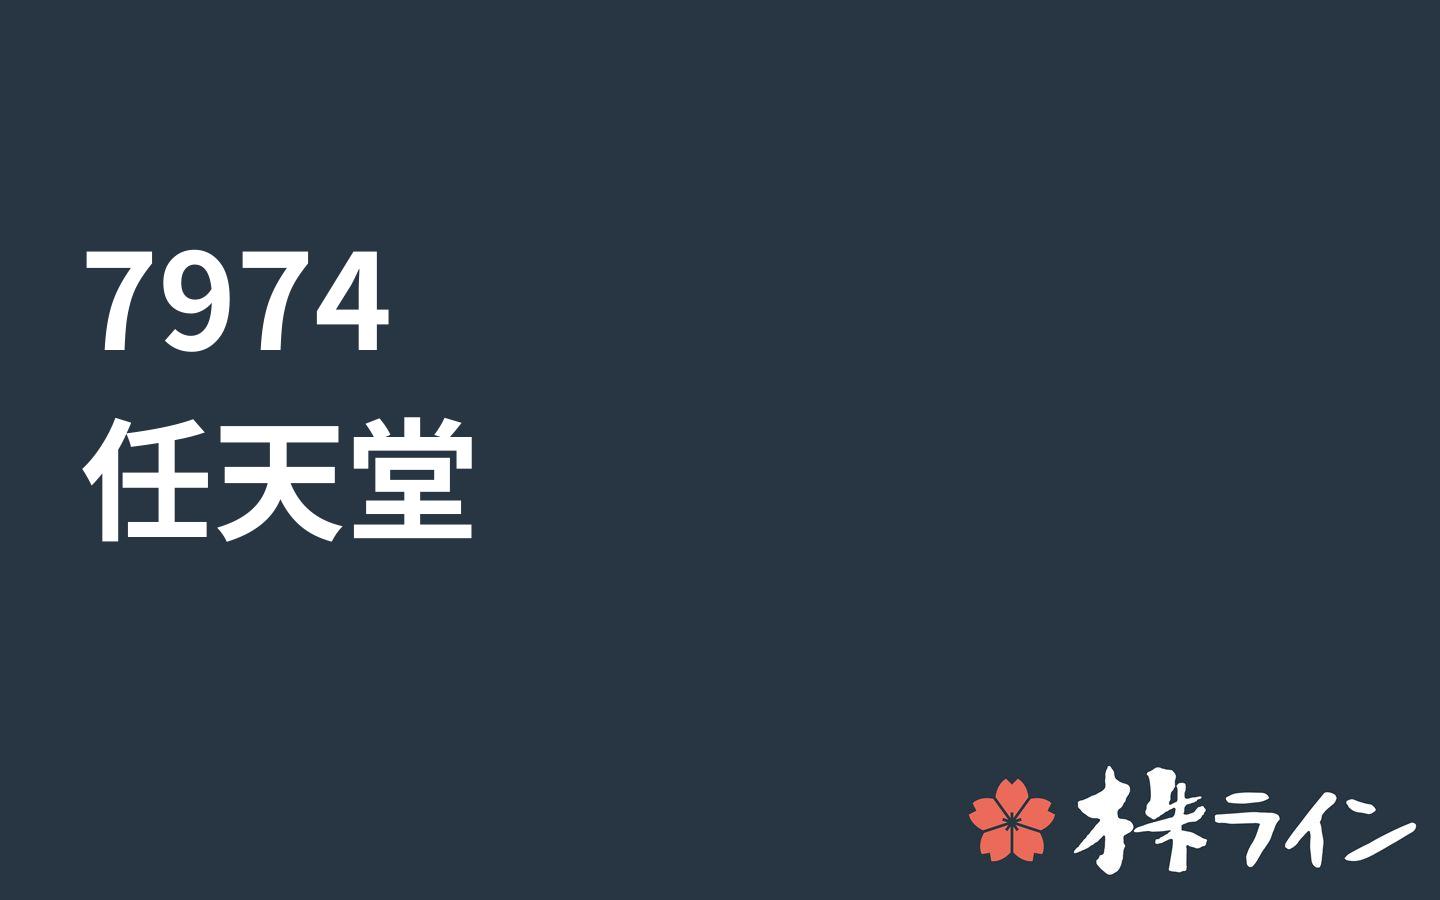 任天堂 7974 株価予想 ツイッター投資家のリアルタイム売買 株ライン